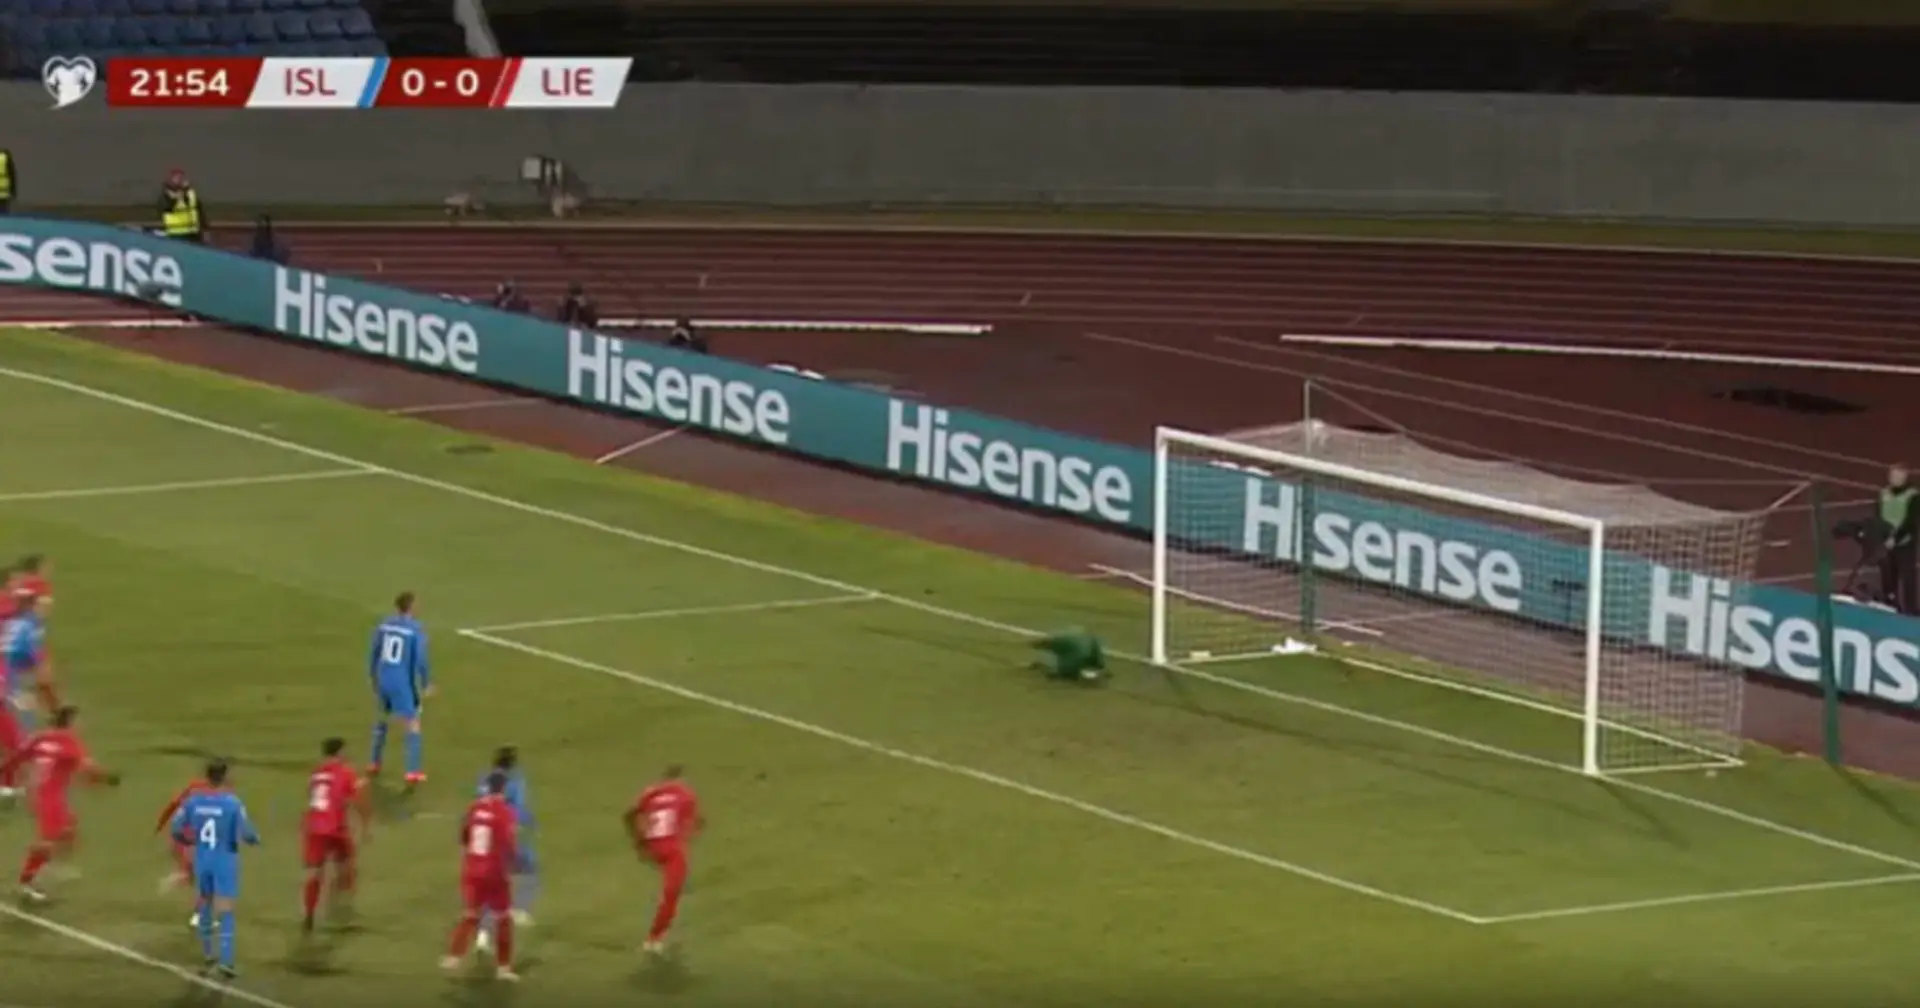 Gylfi Sigurdsoon segna un gol incredibile e diventa il Capocannoniere di tutti i tempi con l'Islanda